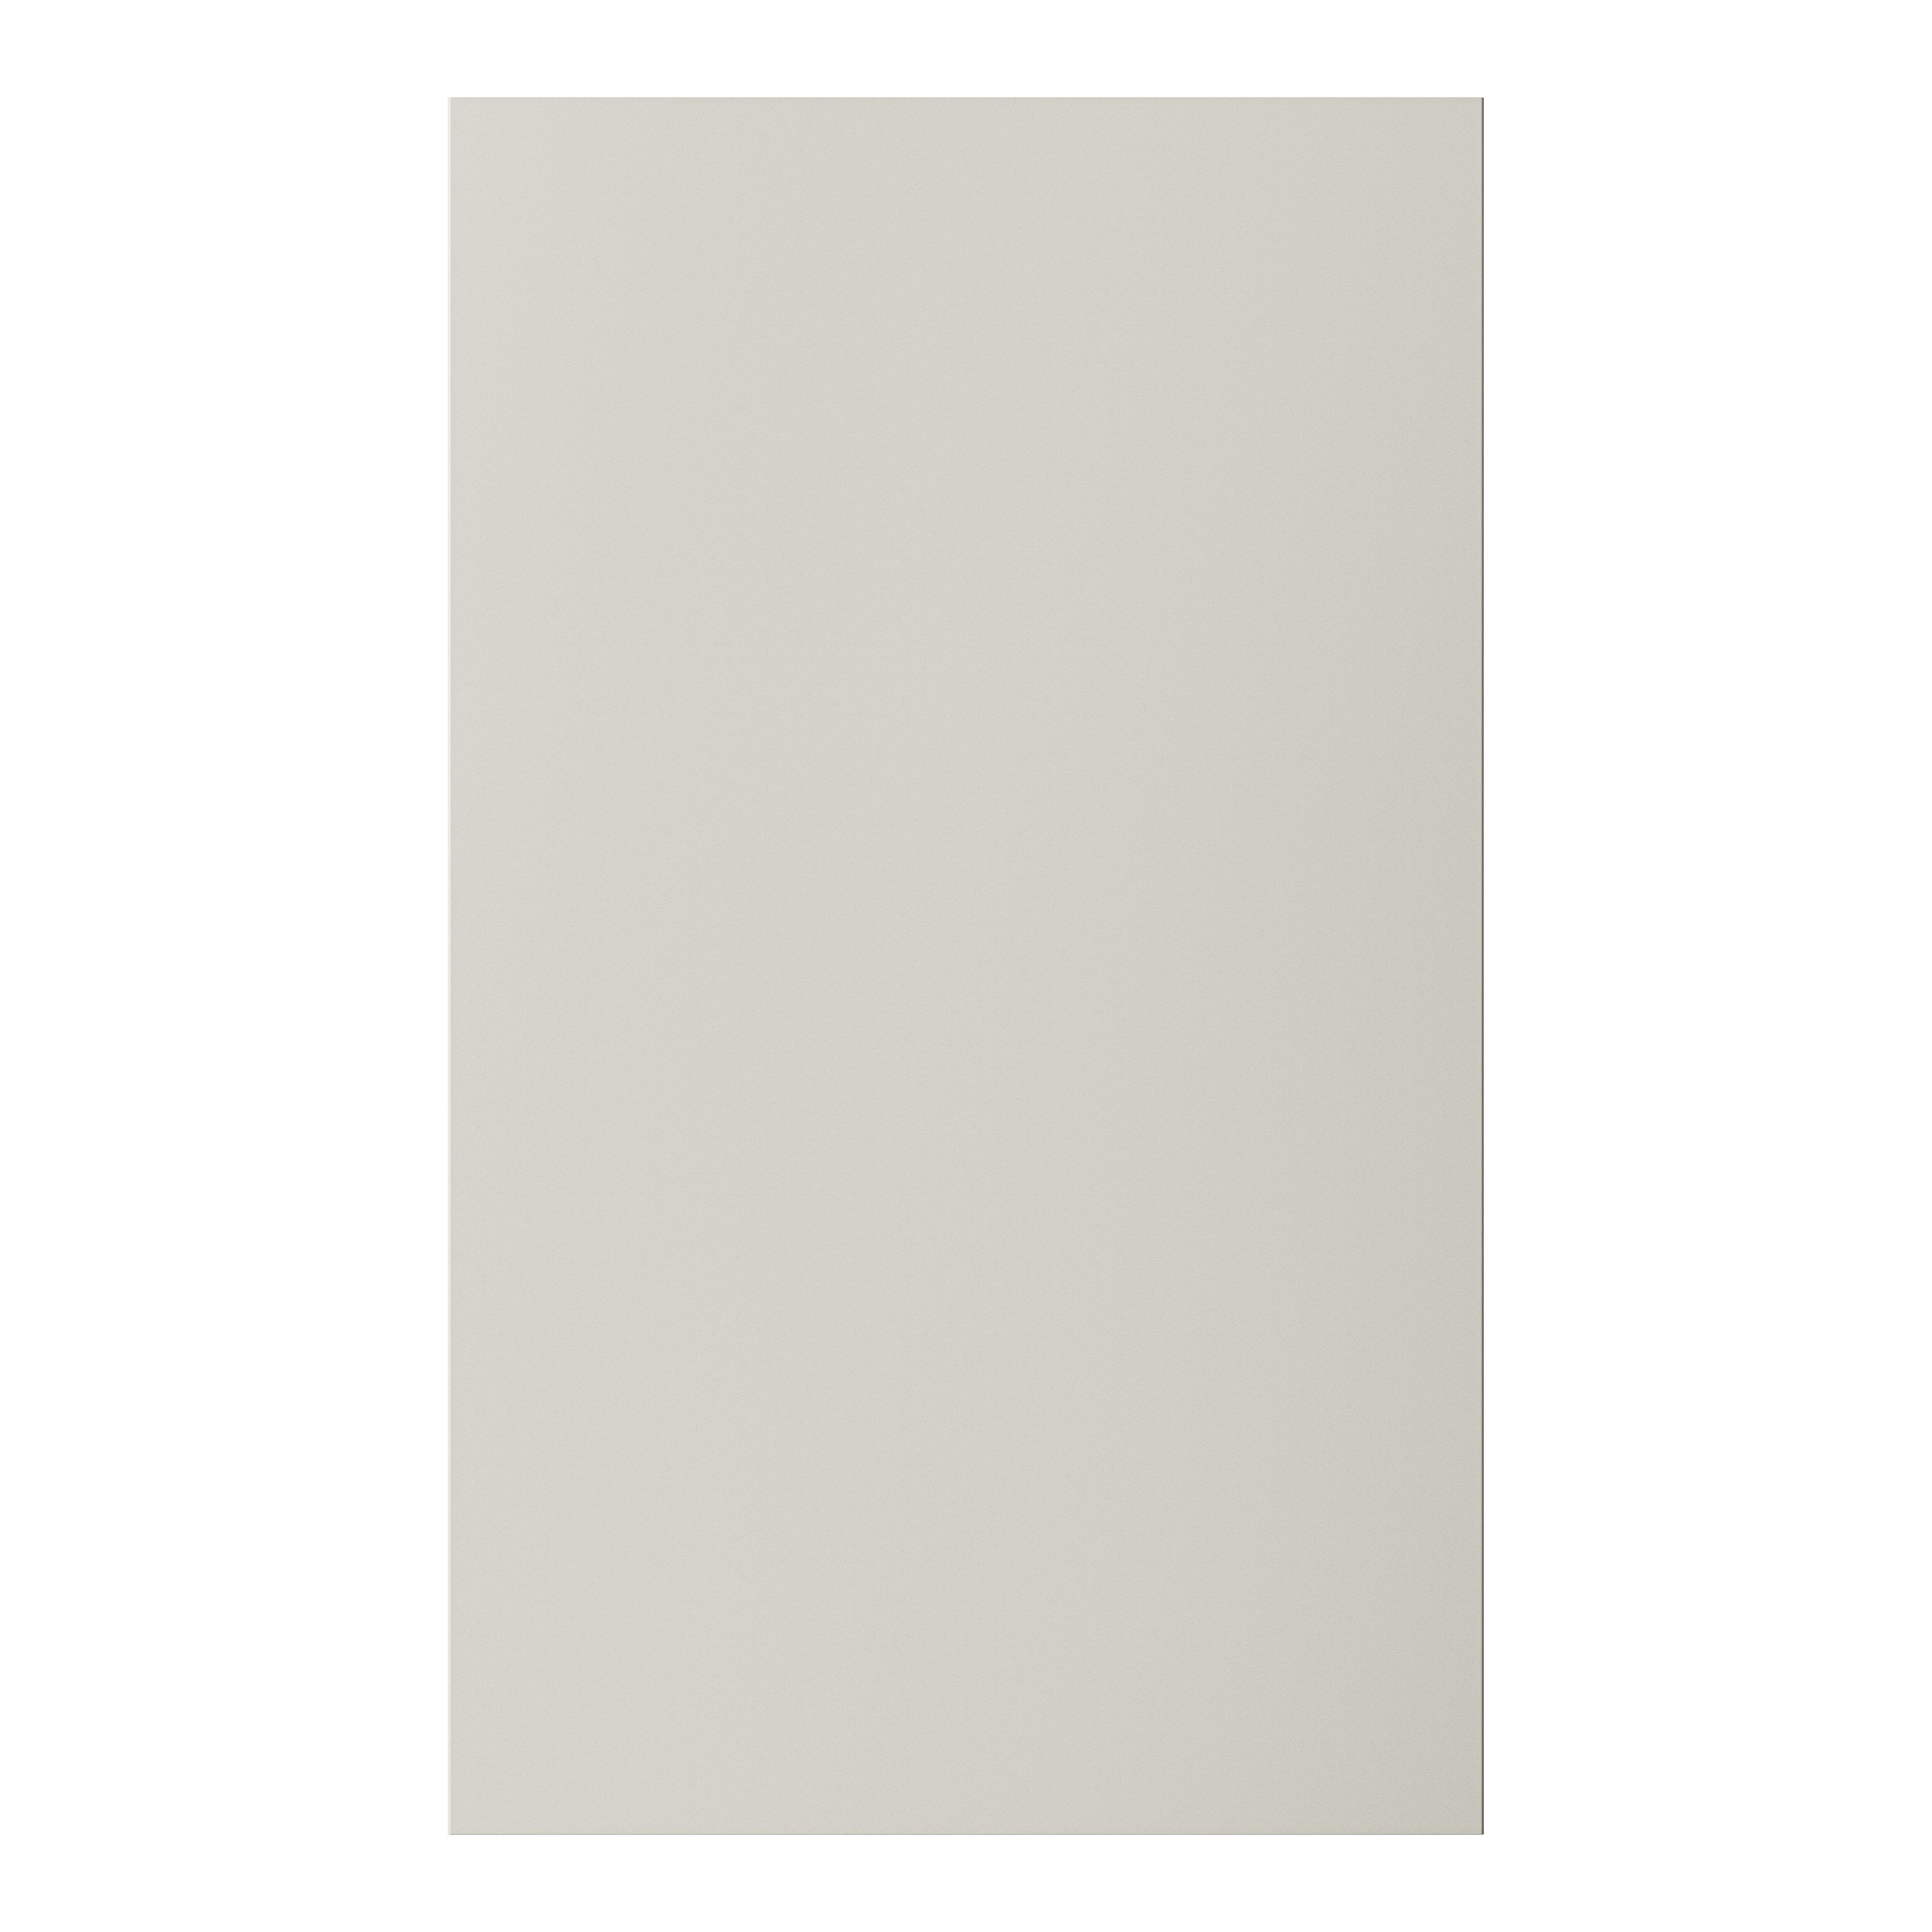 GoodHome Stevia Matt sandstone slab 50:50 Larder/Fridge Cabinet door (W)600mm (H)1001mm (T)18mm